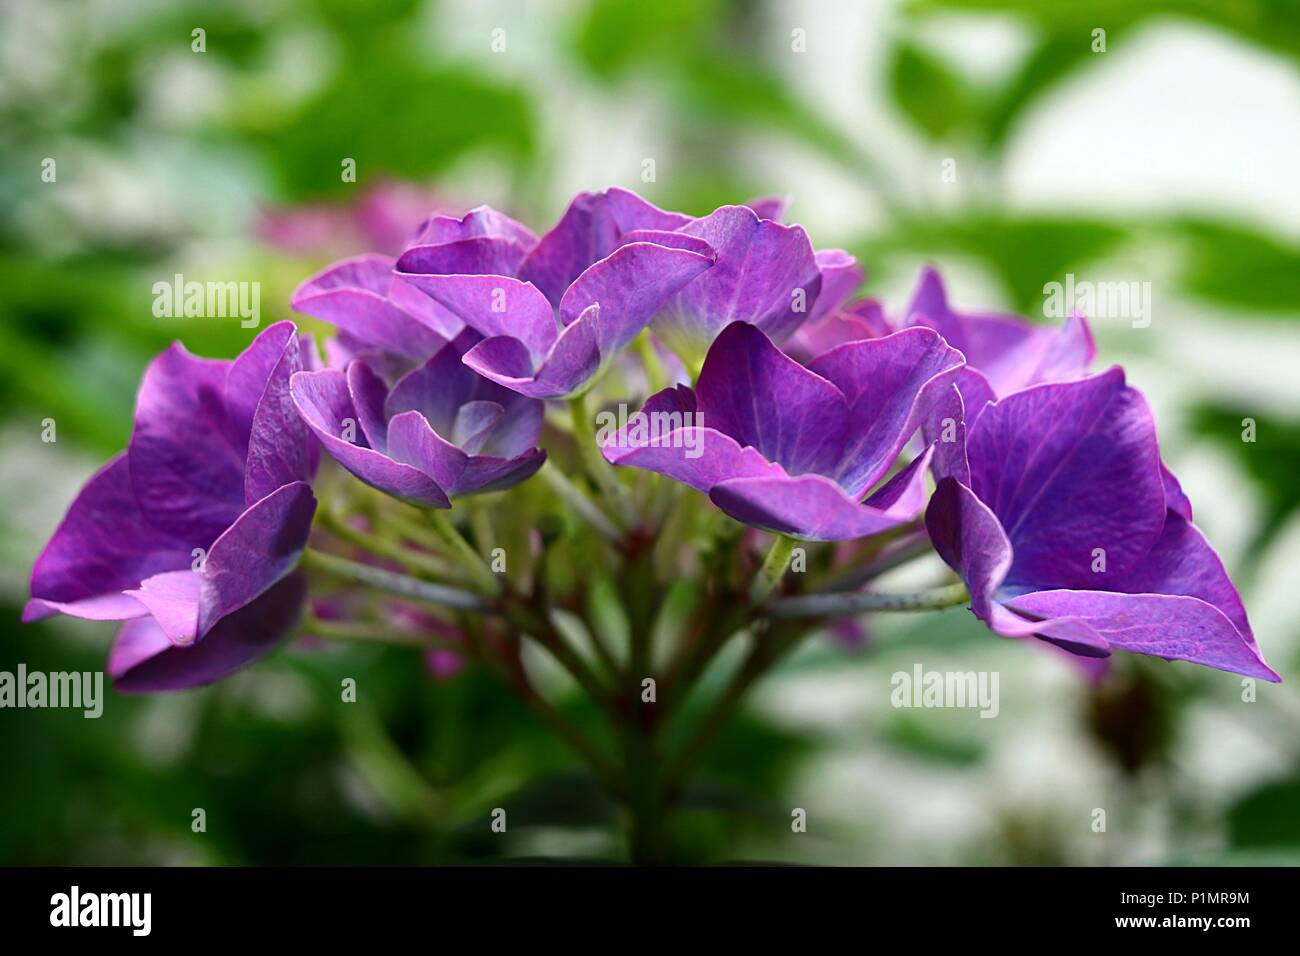 Multi colore hydrangea hortensia fiore in close-up, viola bluastro color lilla fiore ornamentale Foto Stock